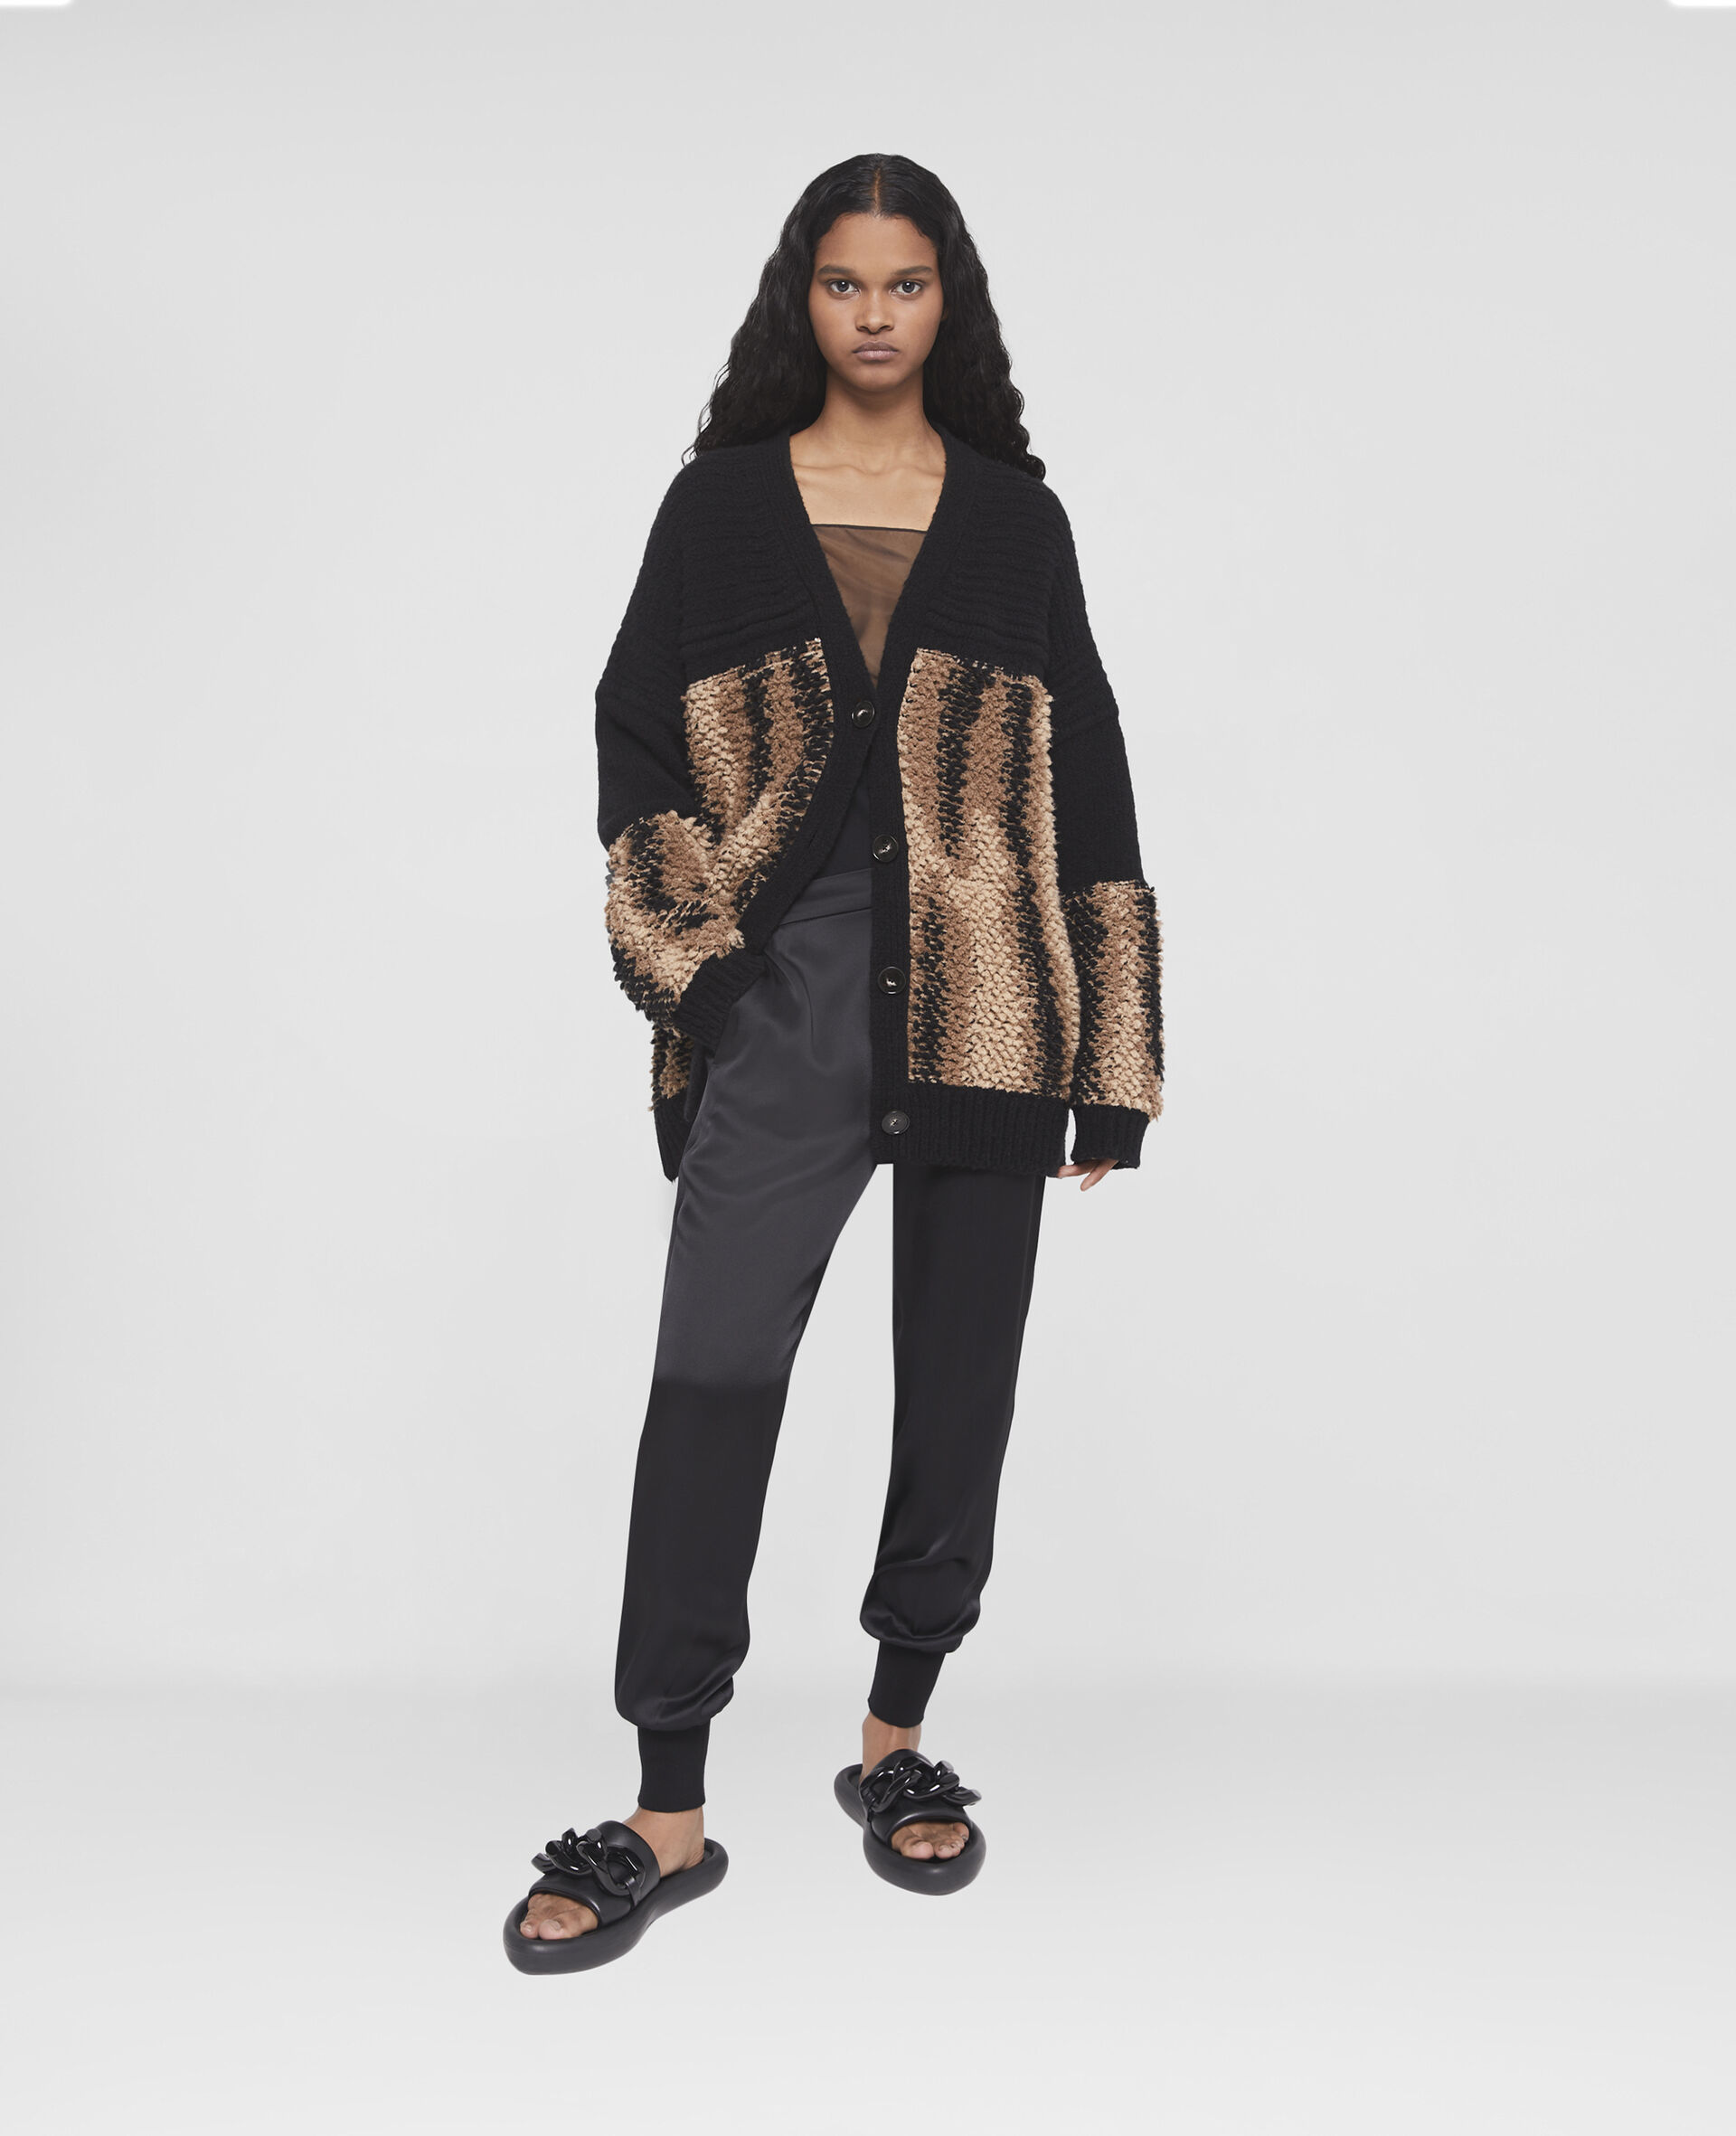 Fur Free Fur Panel Textured Knit Cardigan-Black-large image number 1